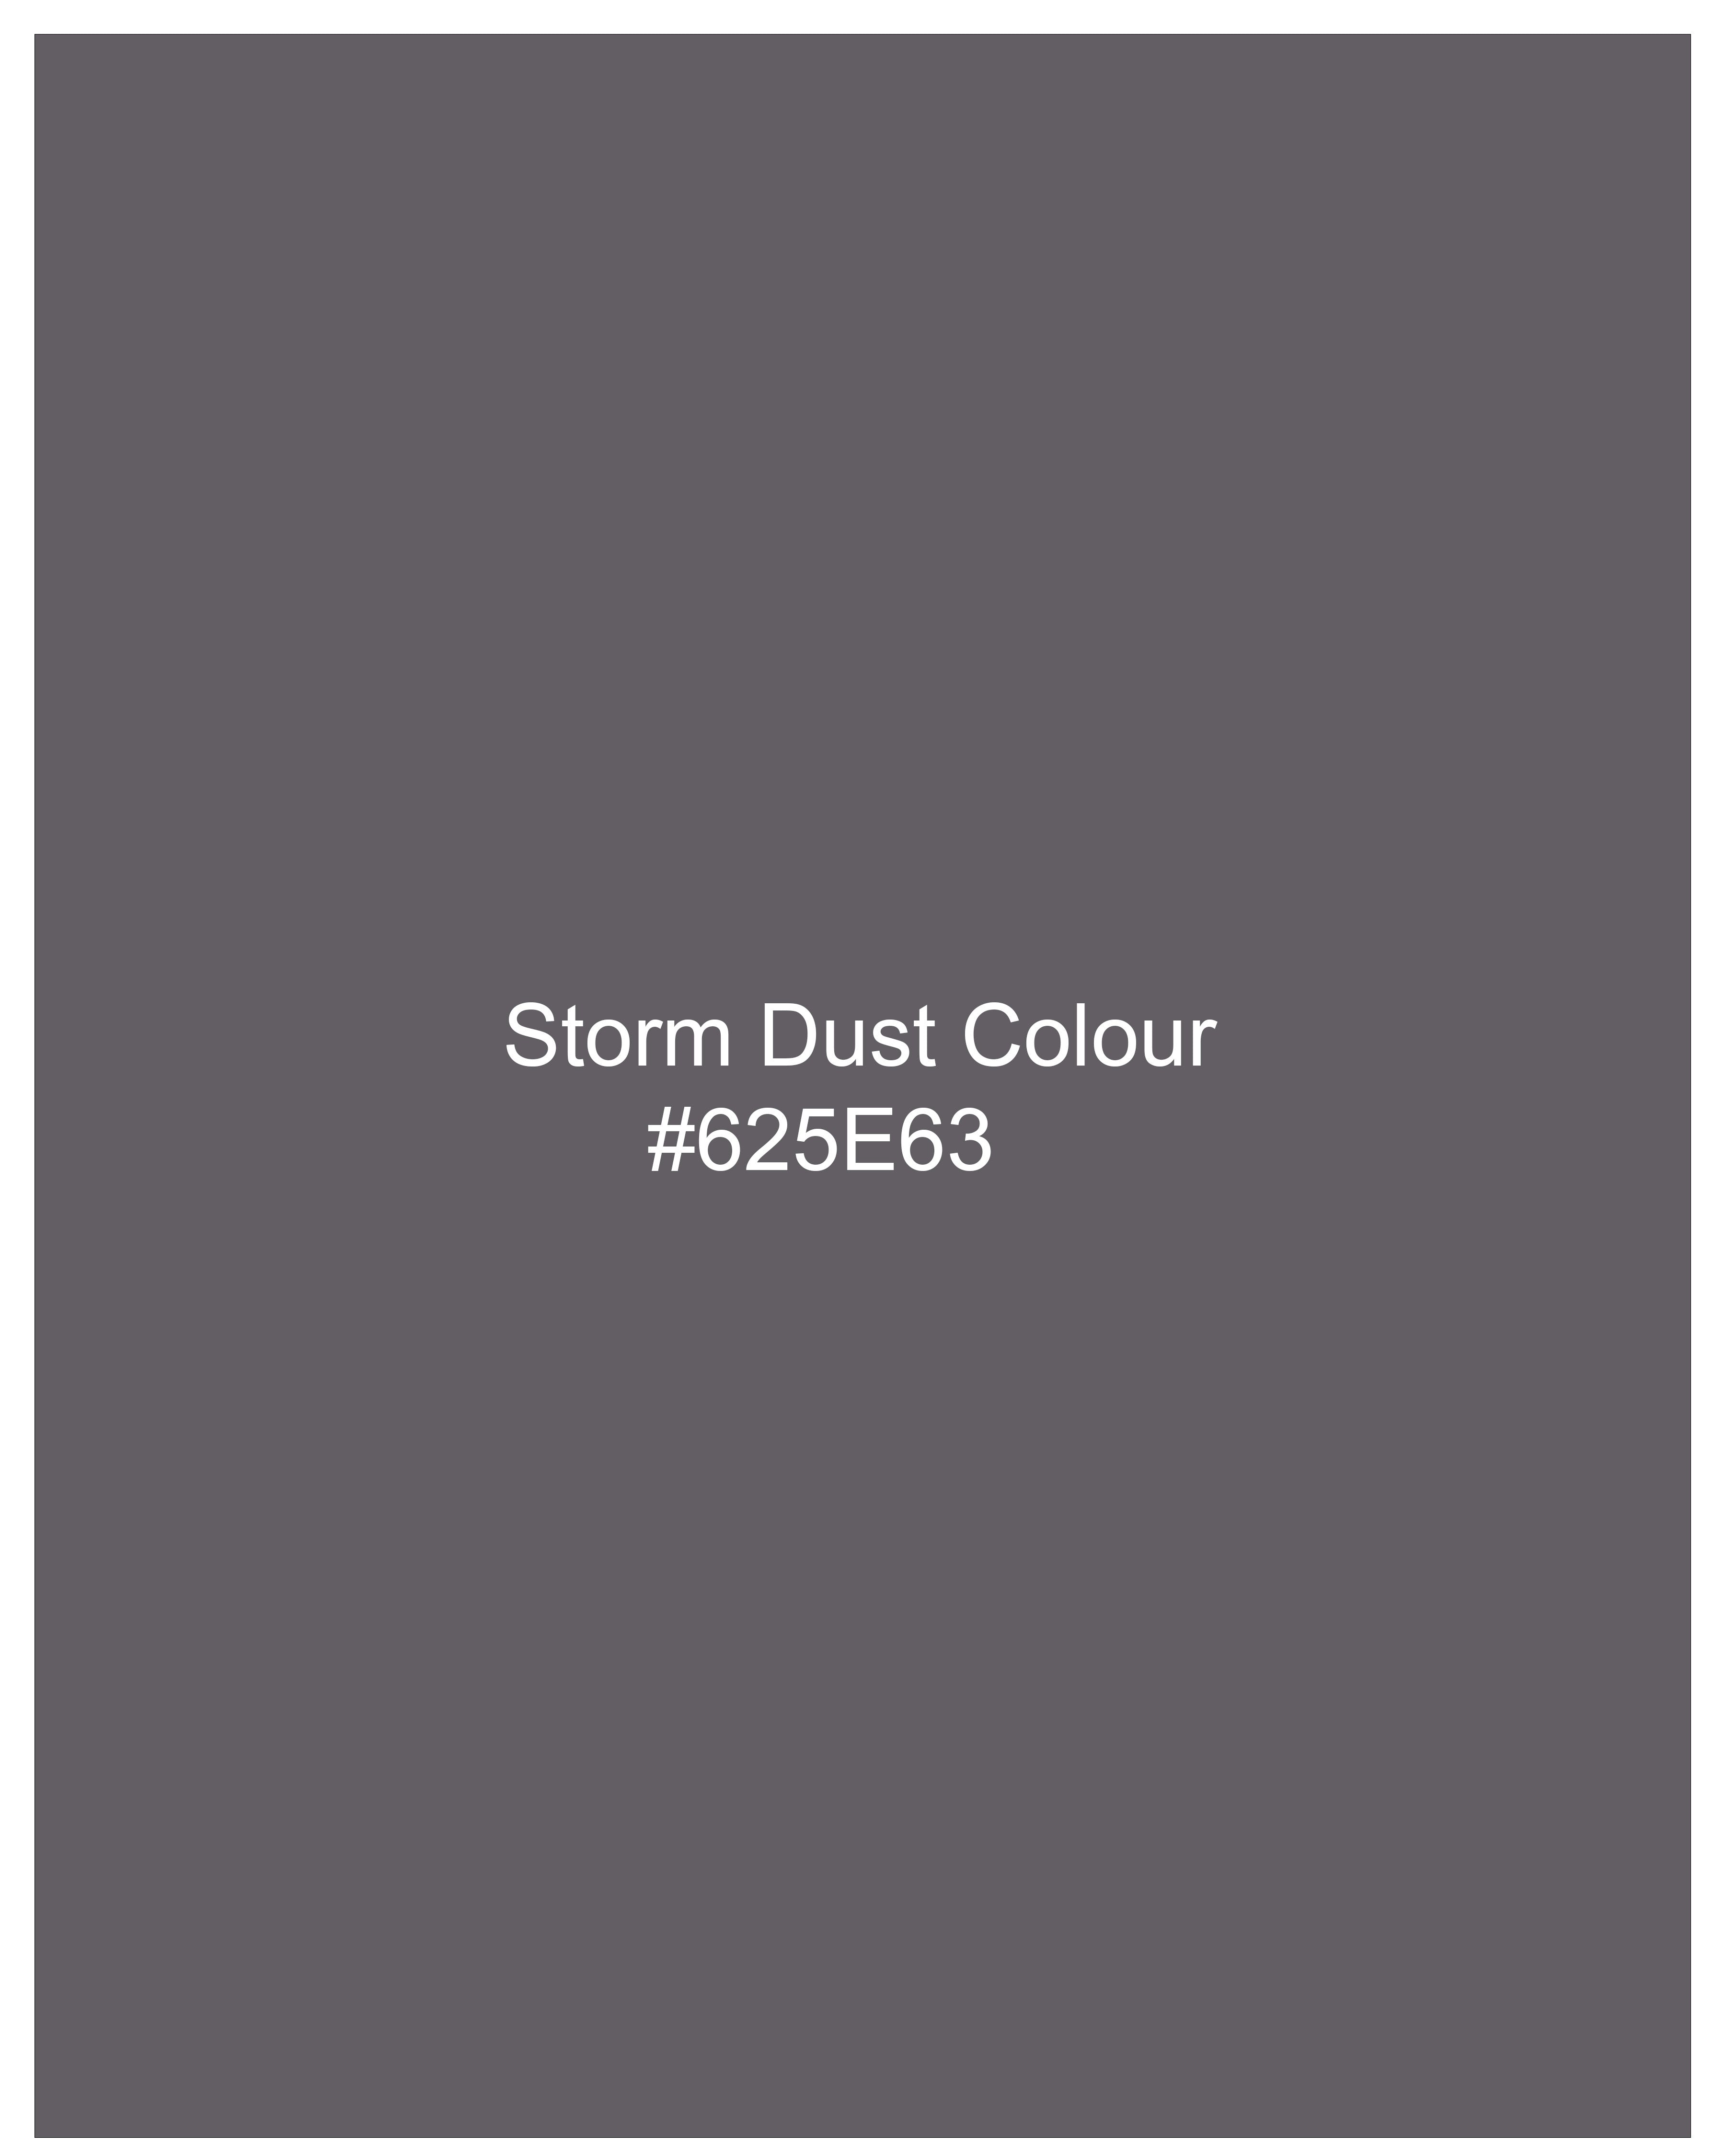 Storm Dust Gray Plaid Pants T2477-28, T2477-30, T2477-32, T2477-34, T2477-36, T2477-38, T2477-40, T2477-42, T2477-44